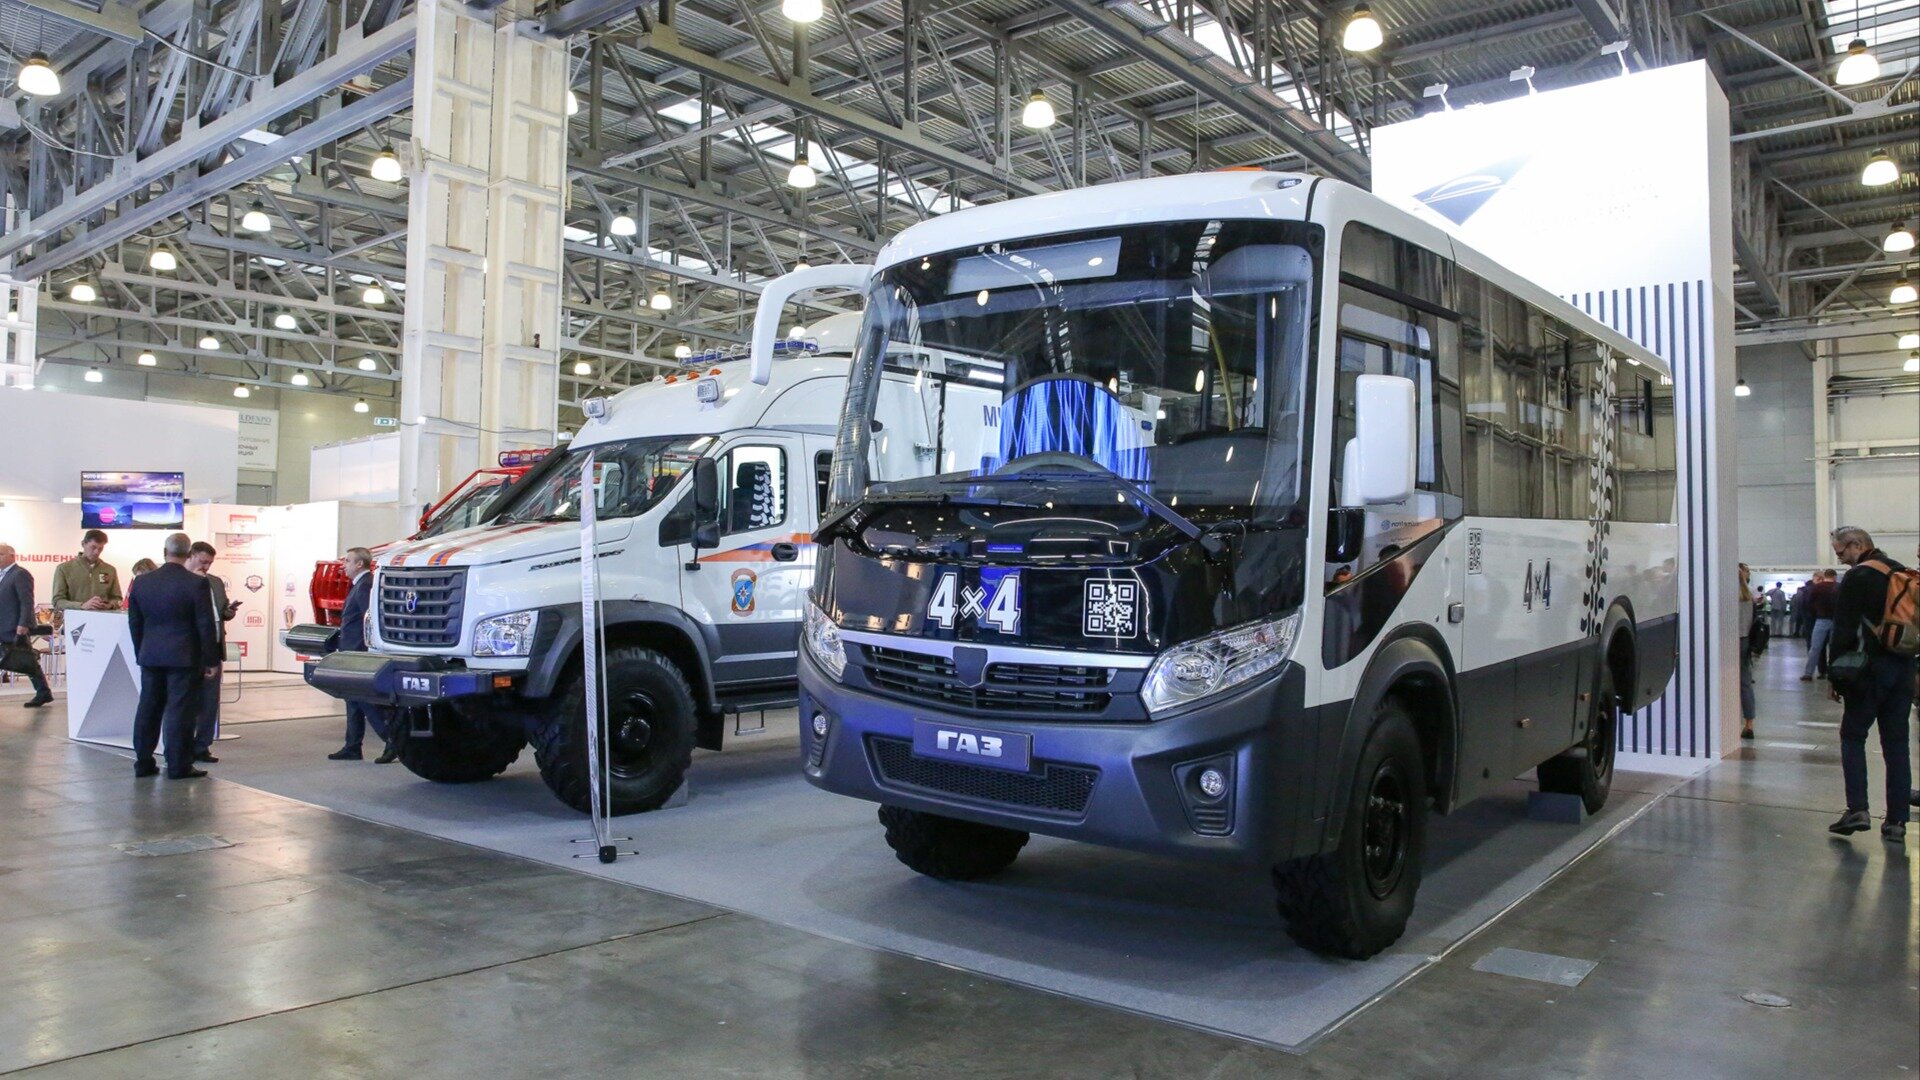 ГАЗ представил две пожарные машины и автобус-вездеход на базе «Садко Next»